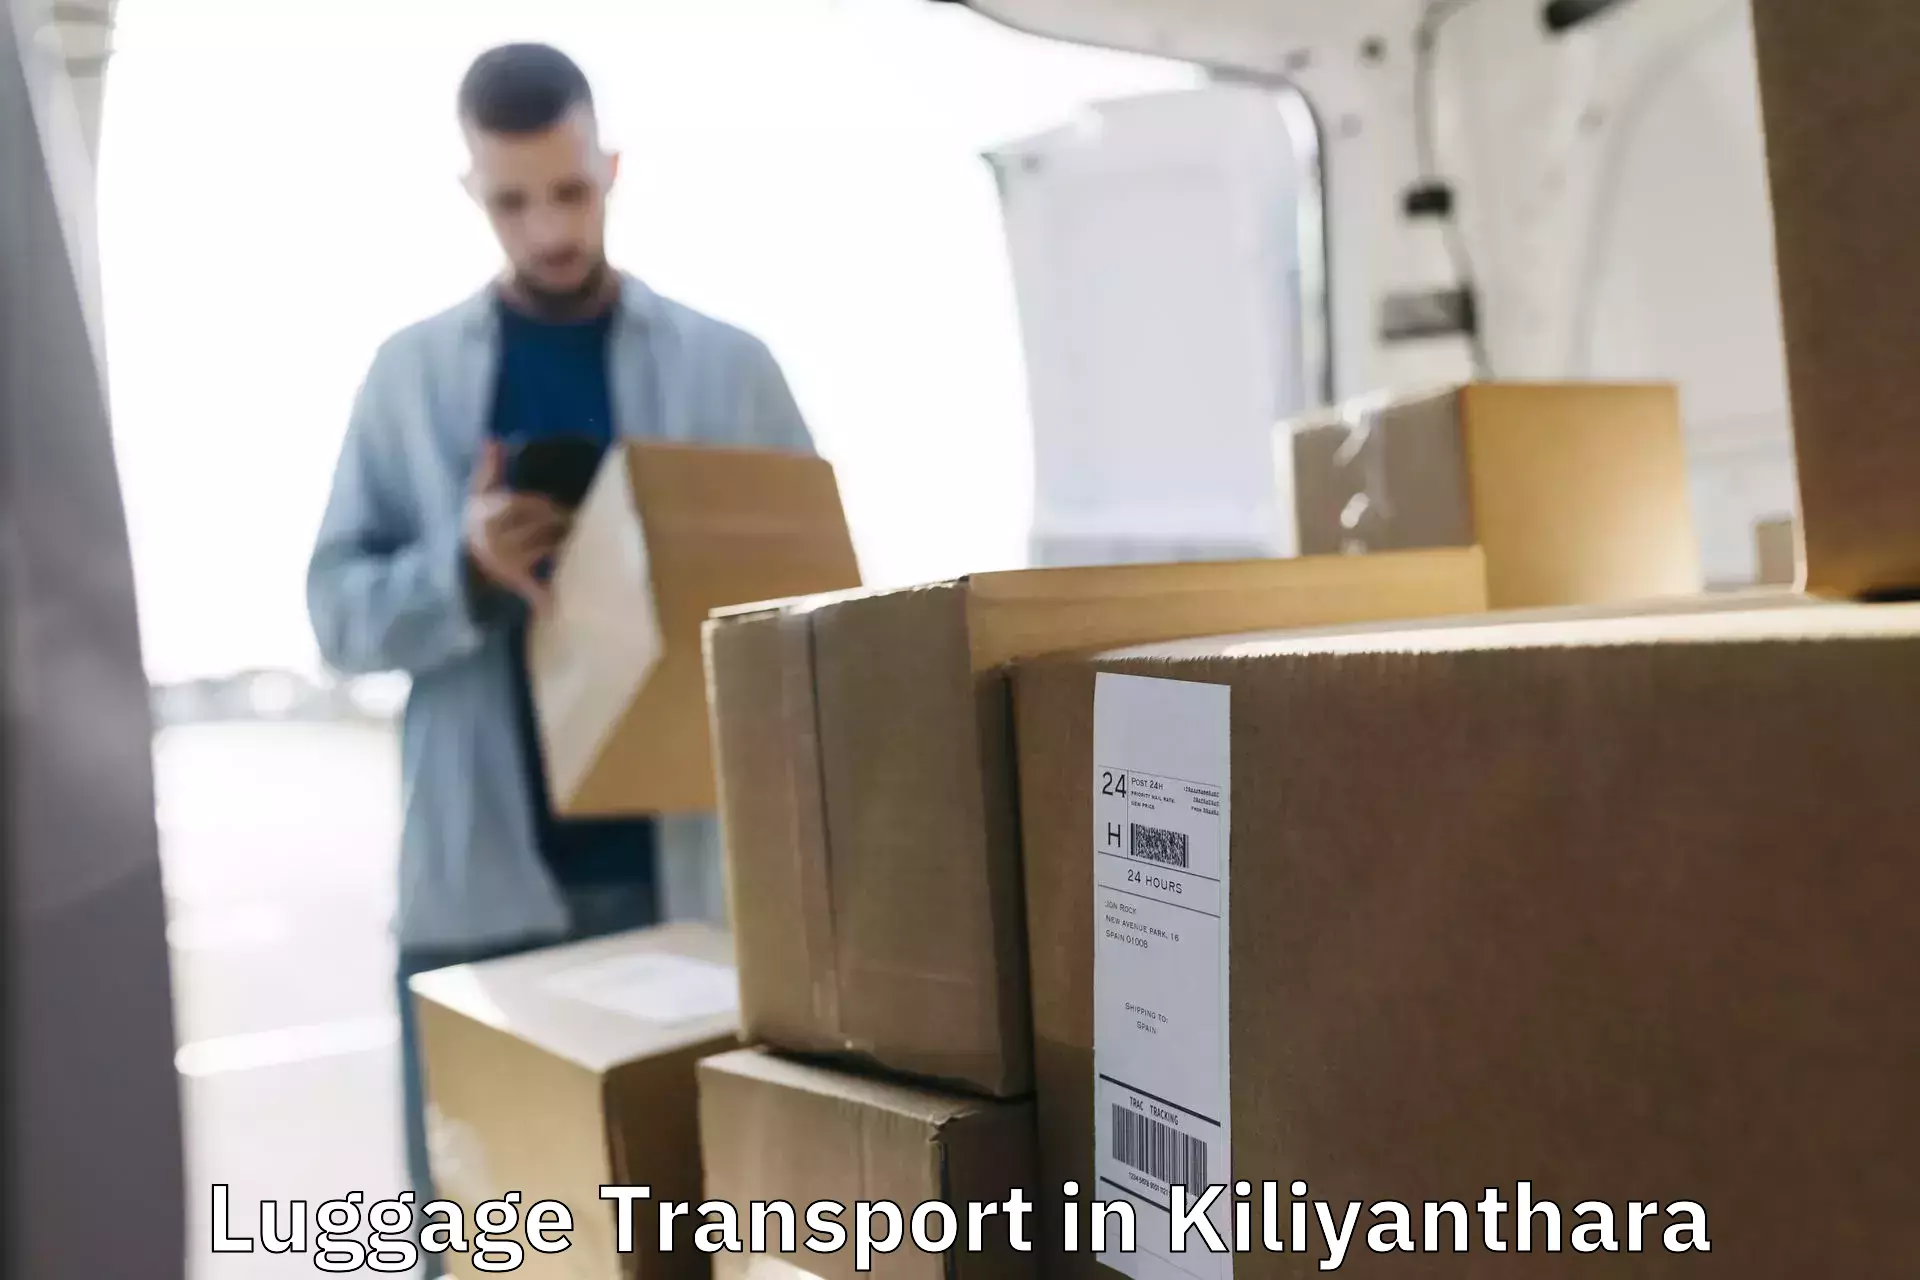 Baggage transport services in Kiliyanthara